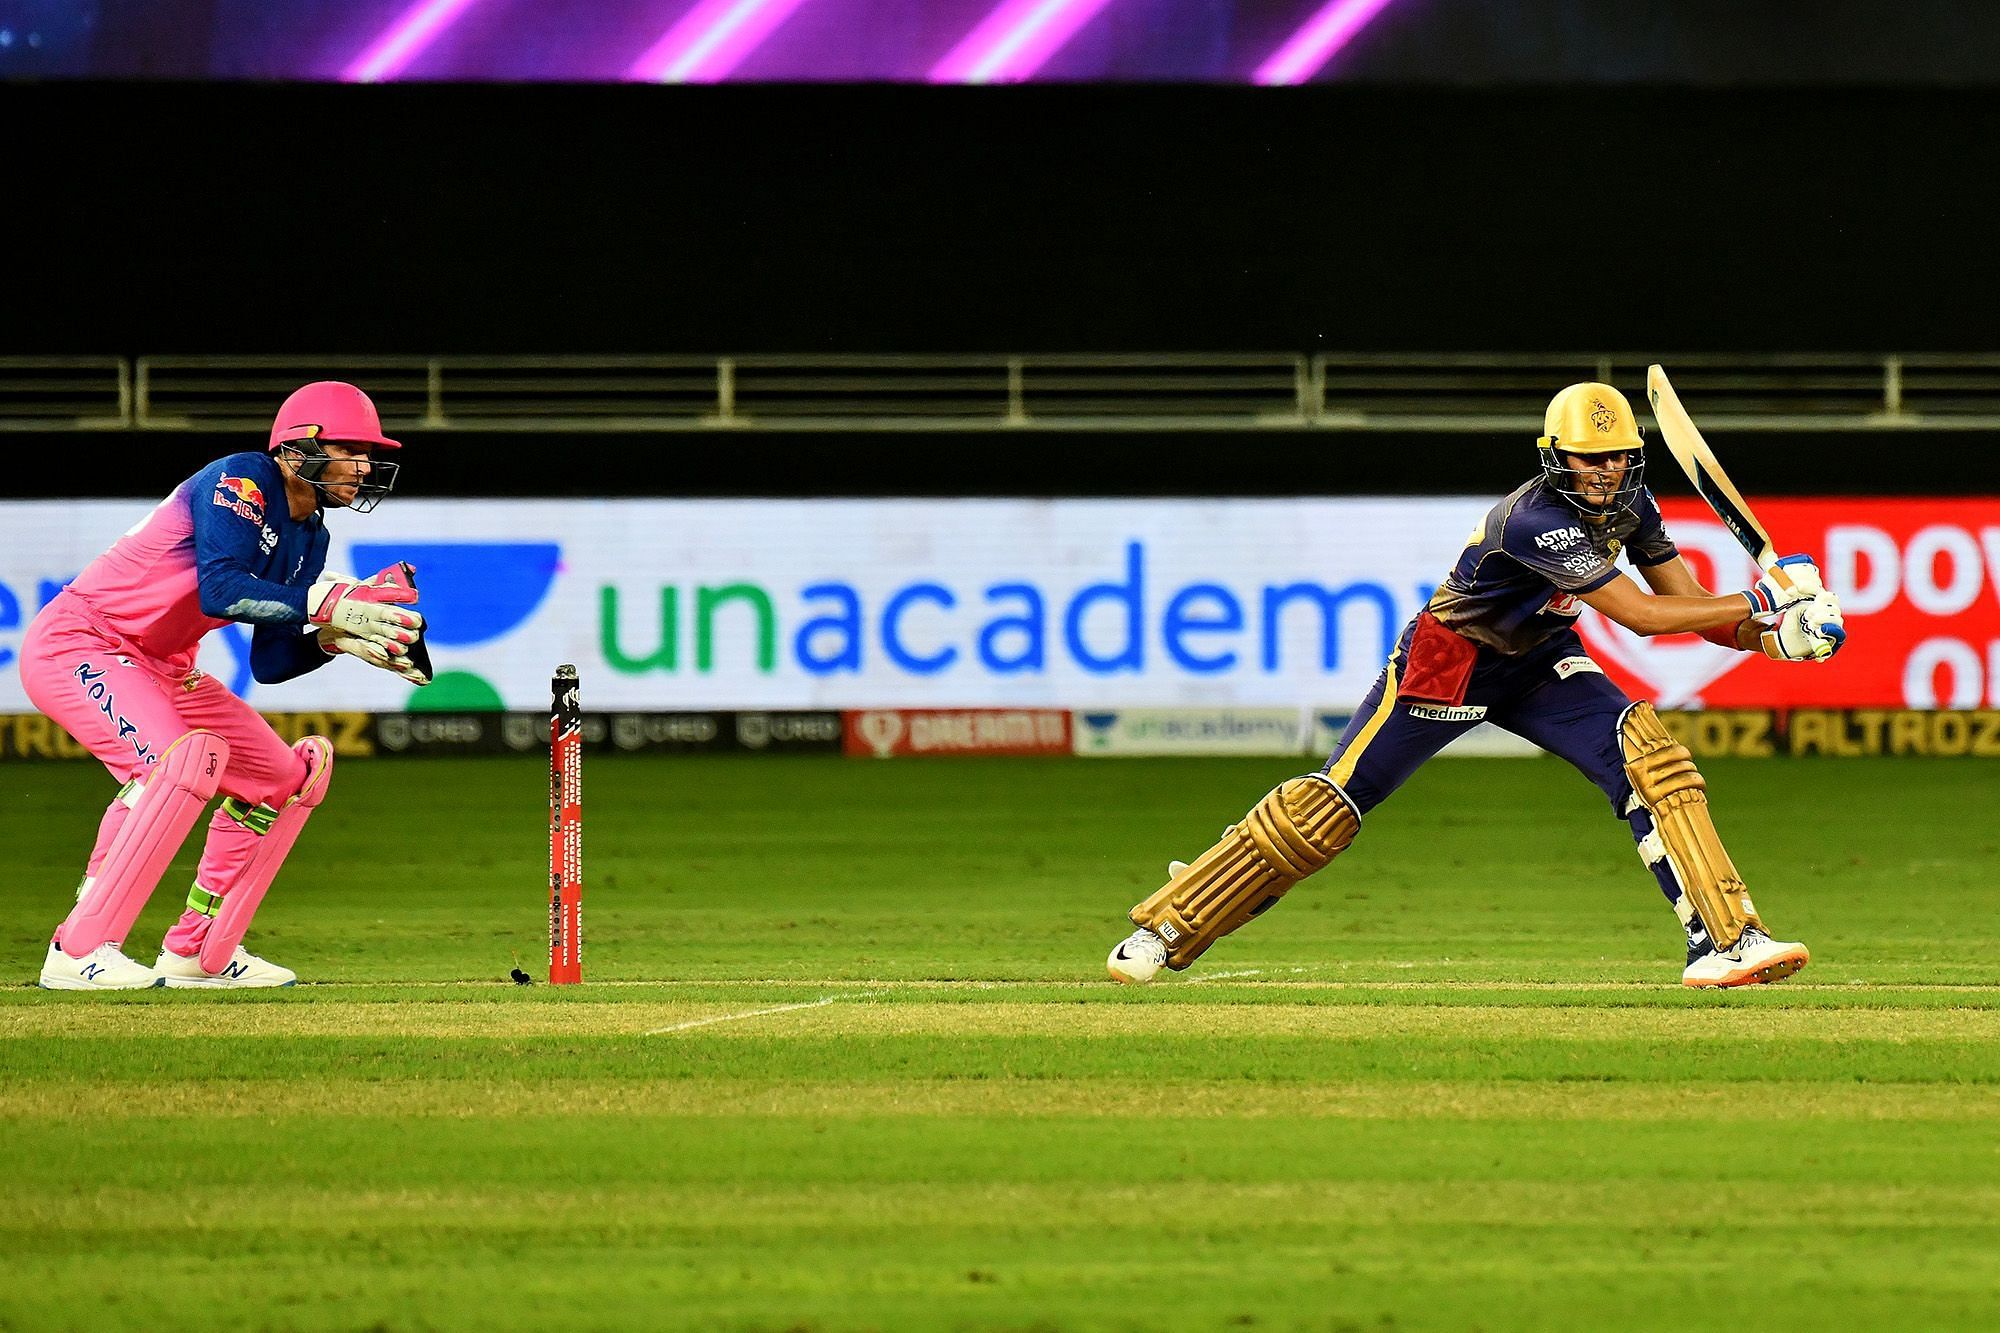 IPL 2020: Best moments from Rajasthan Royals vs Kolkata Knight Riders. Credit: iplt20.com